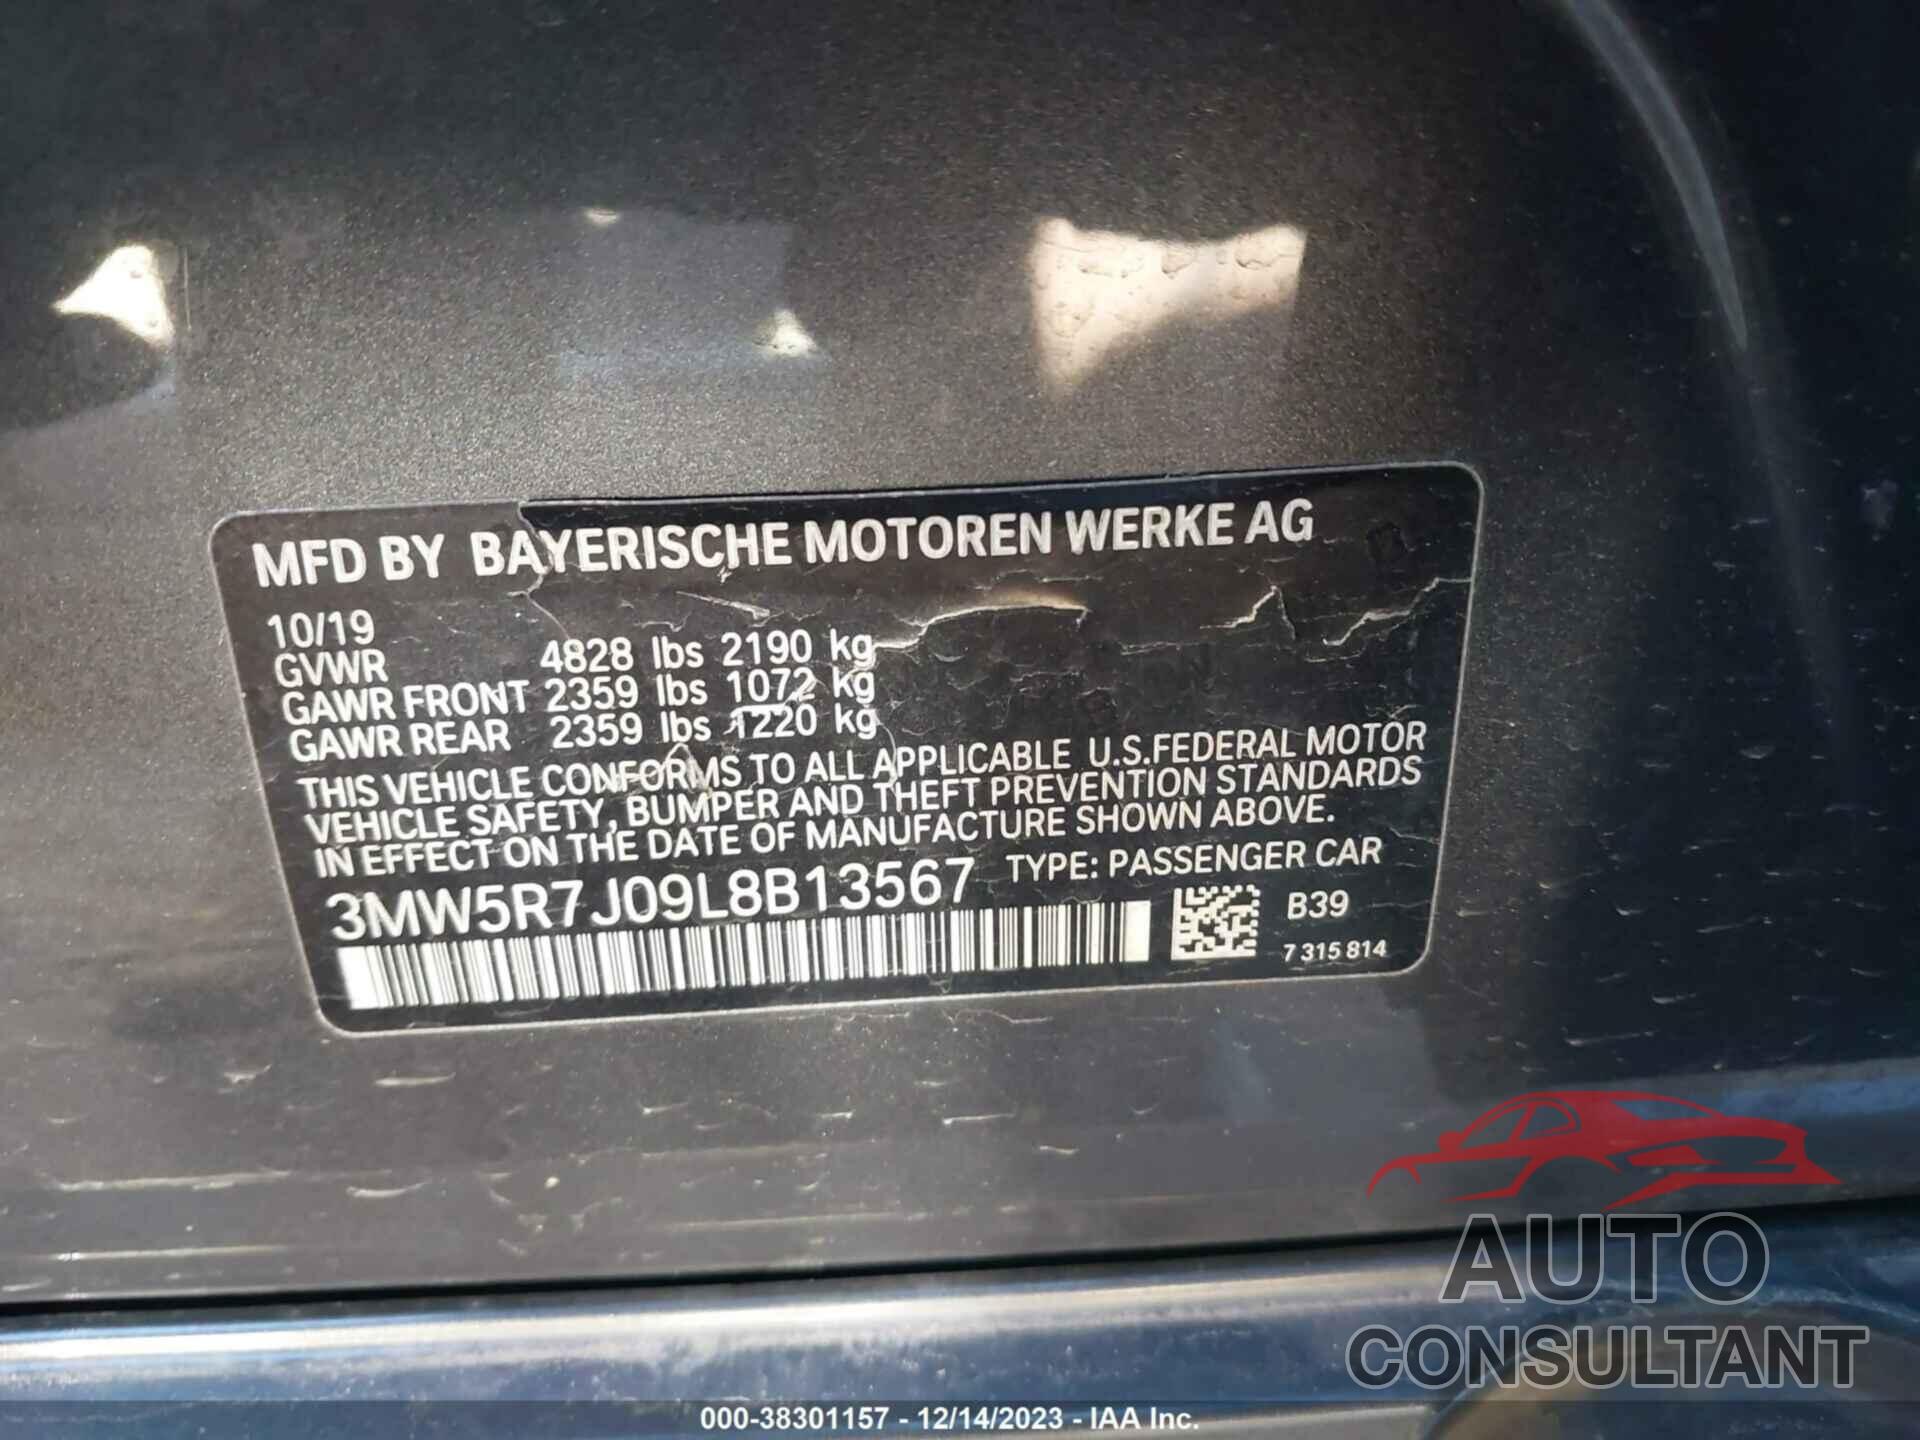 BMW 330XI 2020 - 3MW5R7J09L8B13567